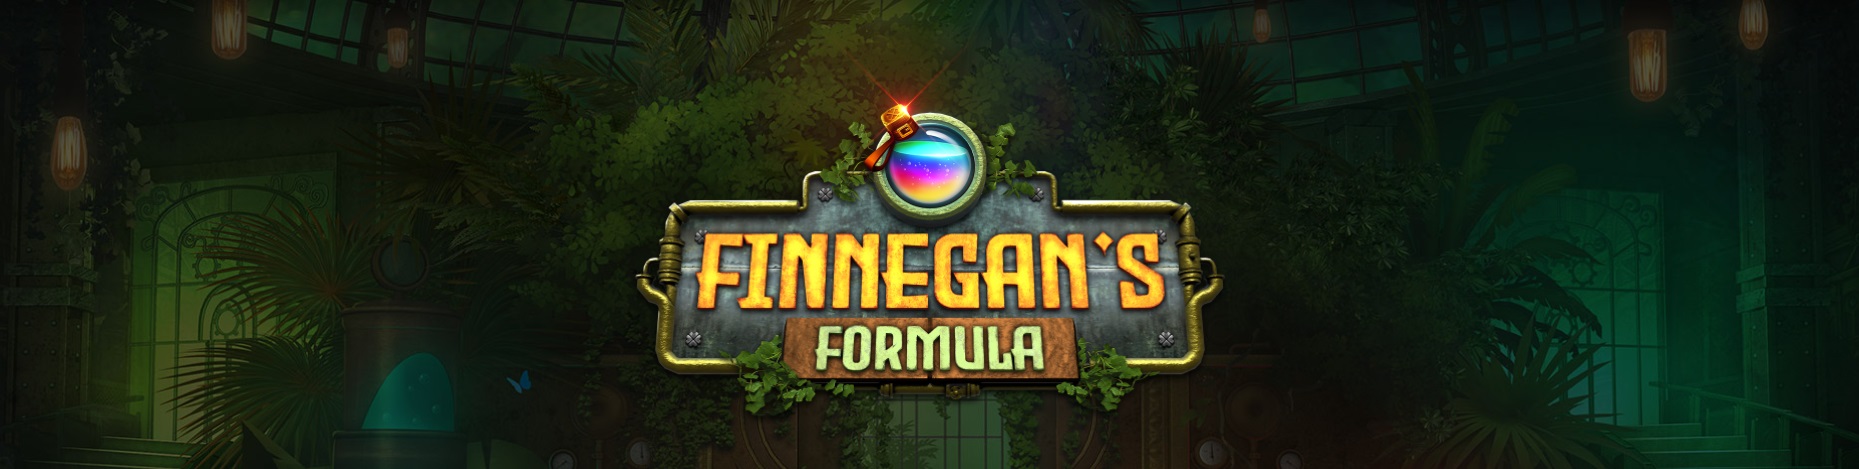 Finnegan's Formula slot